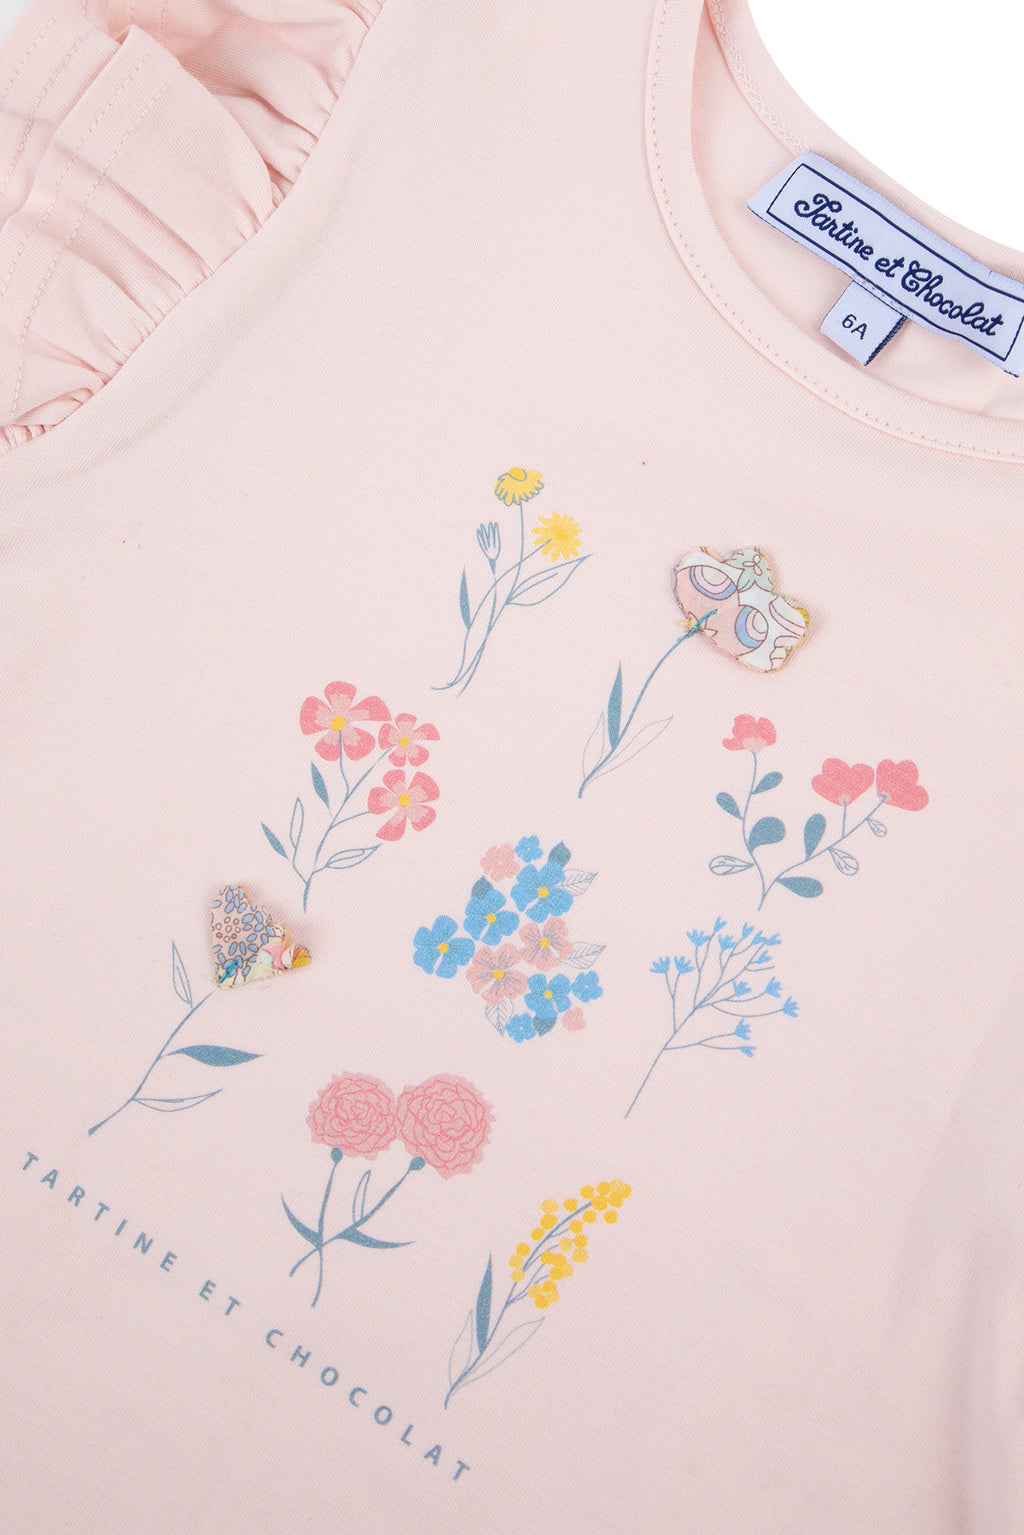 Camiseta - Rosa pálido Ilustración flores